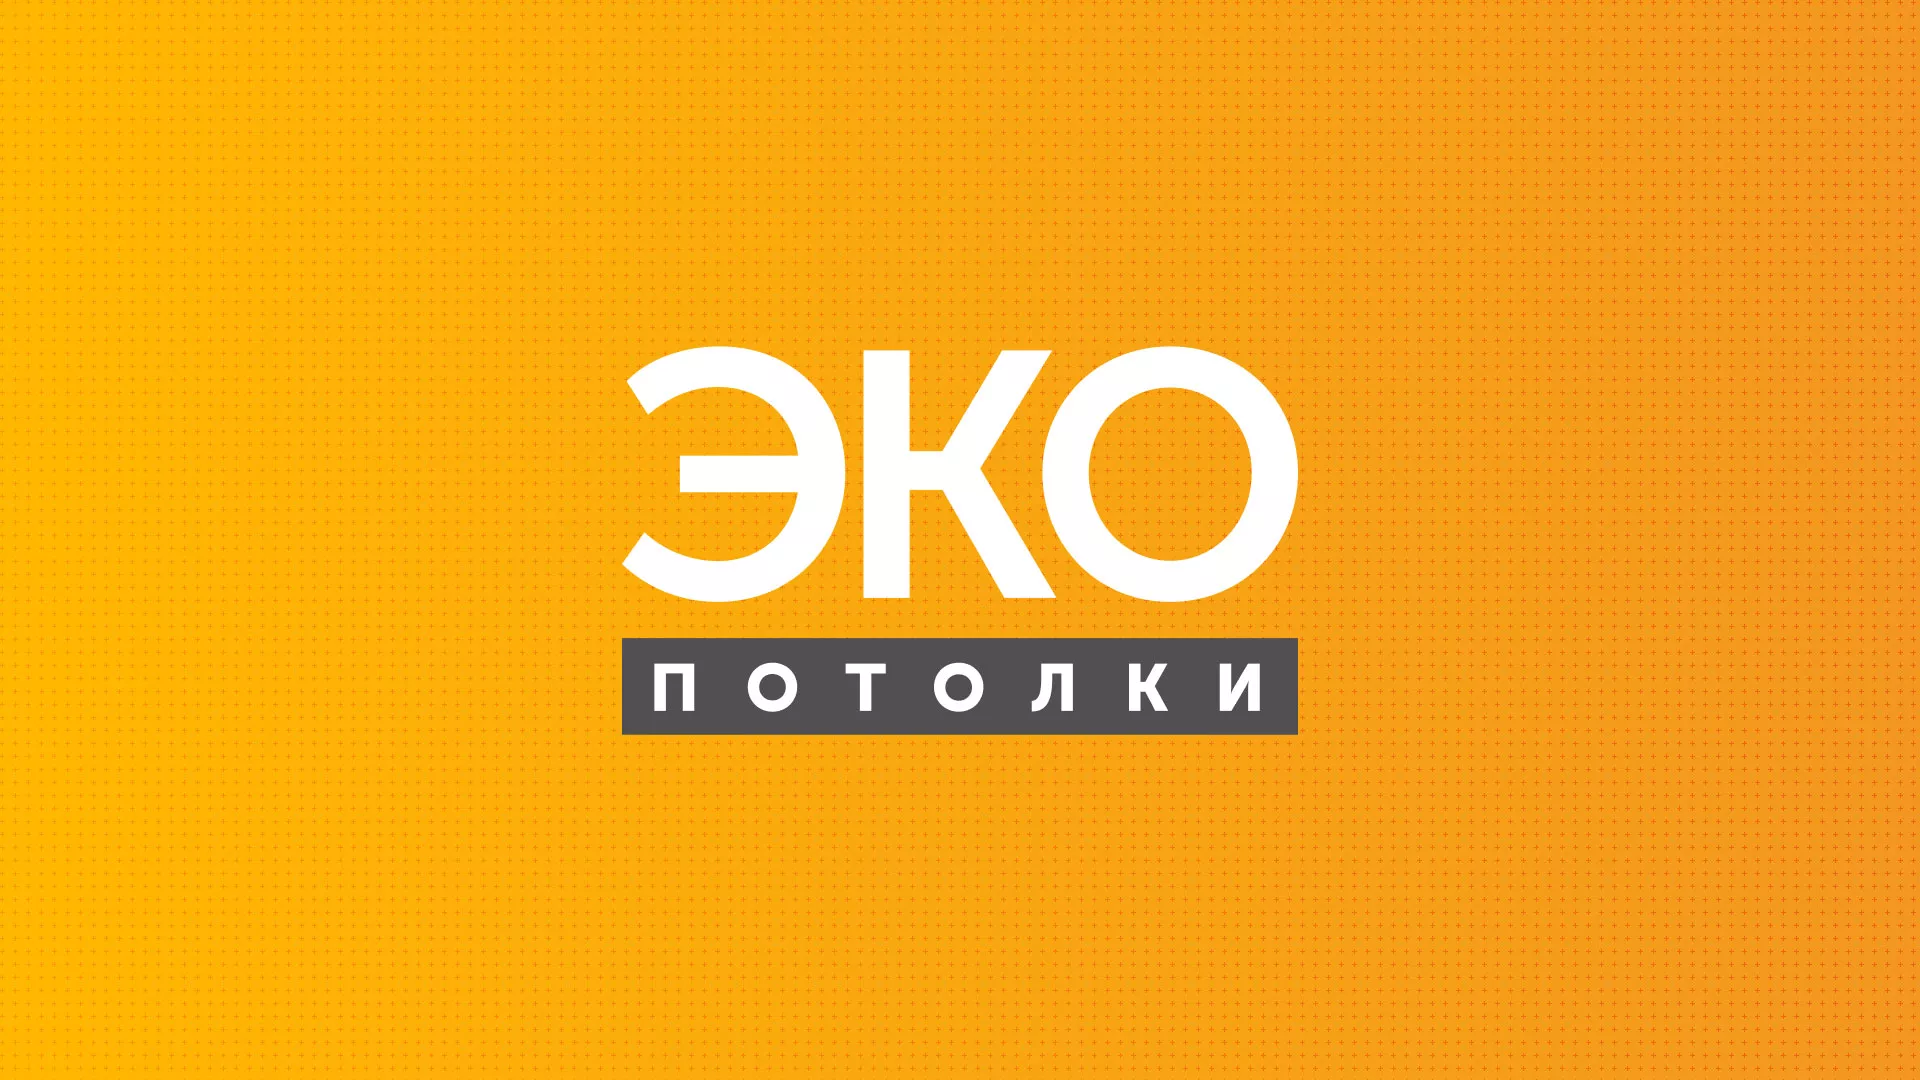 Разработка сайта по натяжным потолкам «Эко Потолки» в Усть-Джегуте